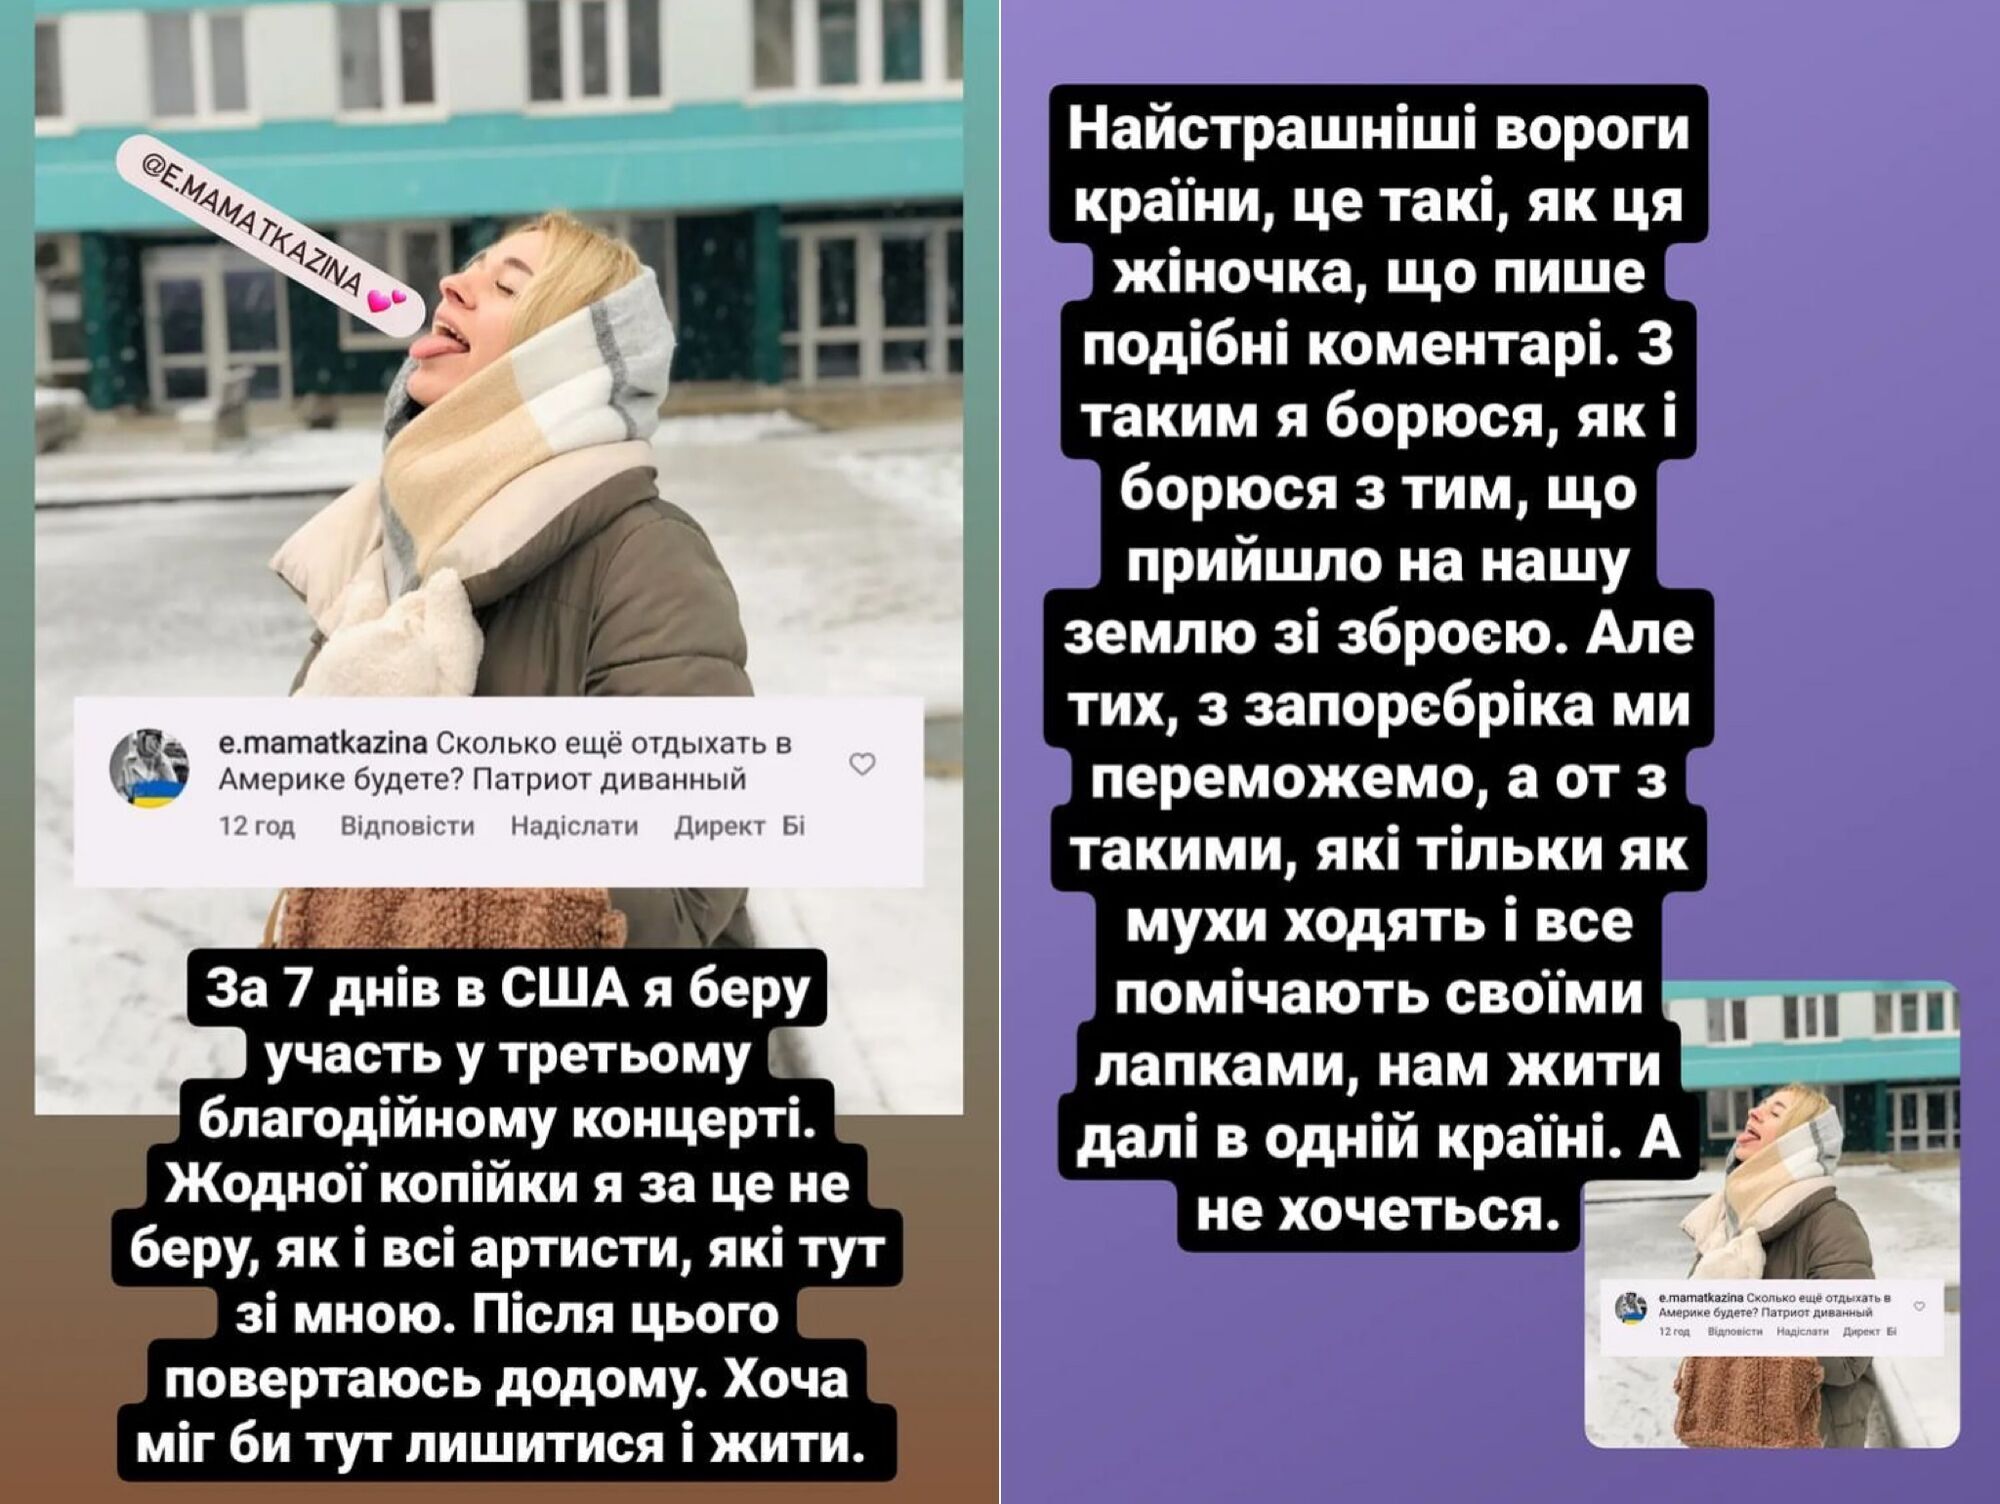 "Мы не заработали ни копейки": Анатолич из-за границы поставил на место украинку и опроверг миф о "зажравшихся" звездах